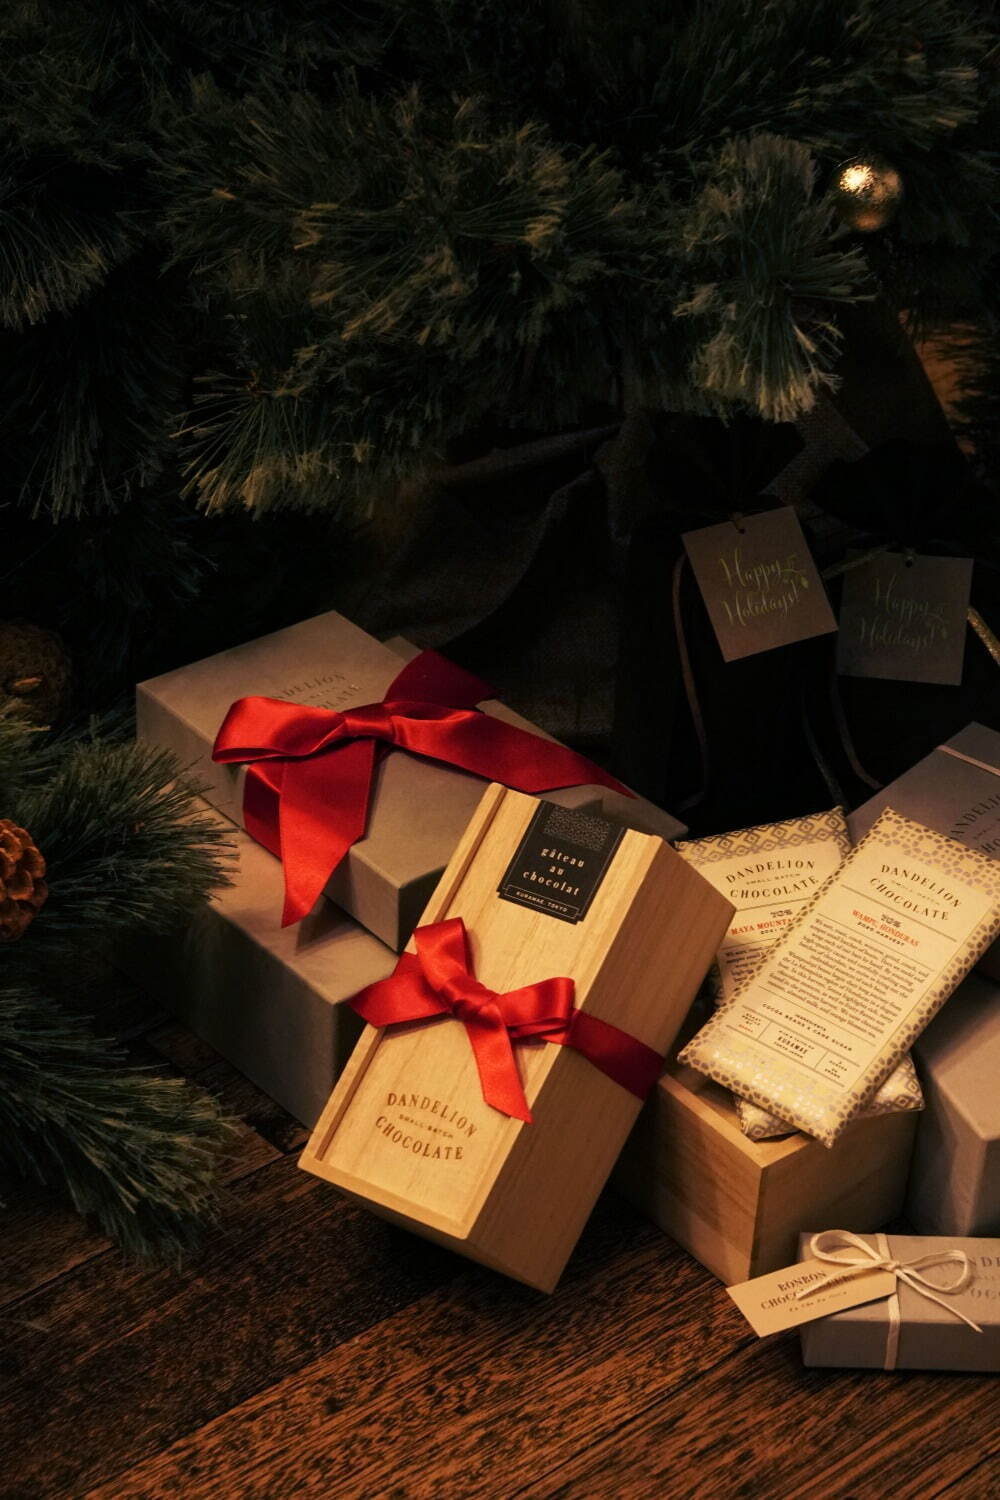 ダンデライオン・チョコレート23年クリスマススイーツ、チョコレート×ドライフルーツの限定シュトーレン｜写真8